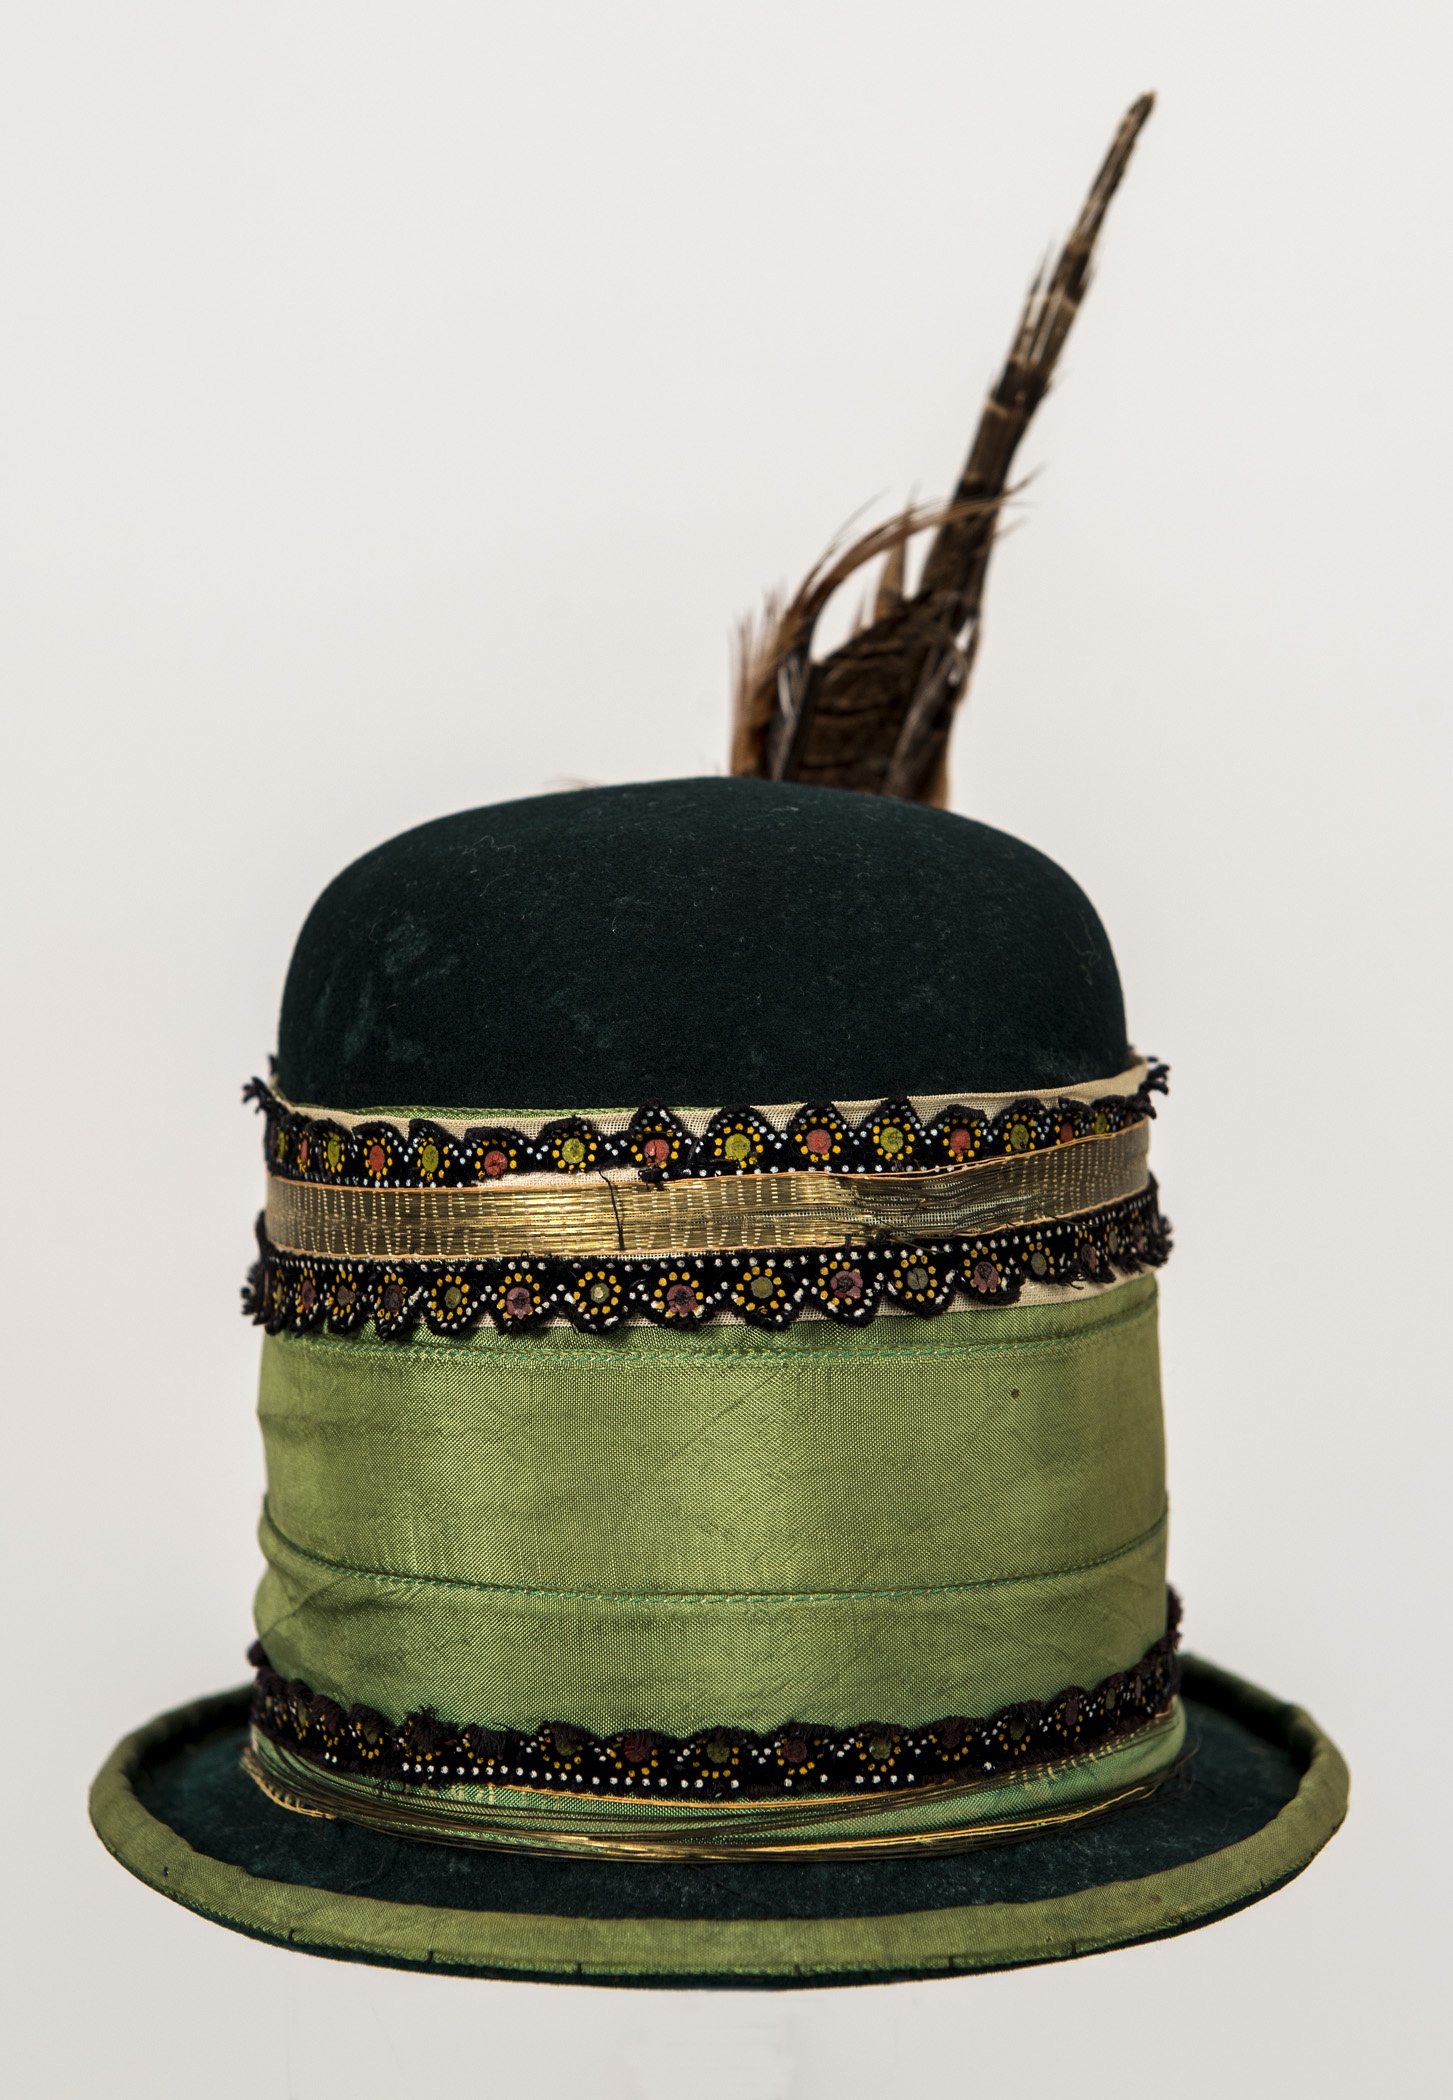 Gyerek kalap, "kisbarcis" kalap (Matyó Múzeum, Mezőkövesd CC BY-NC-SA)